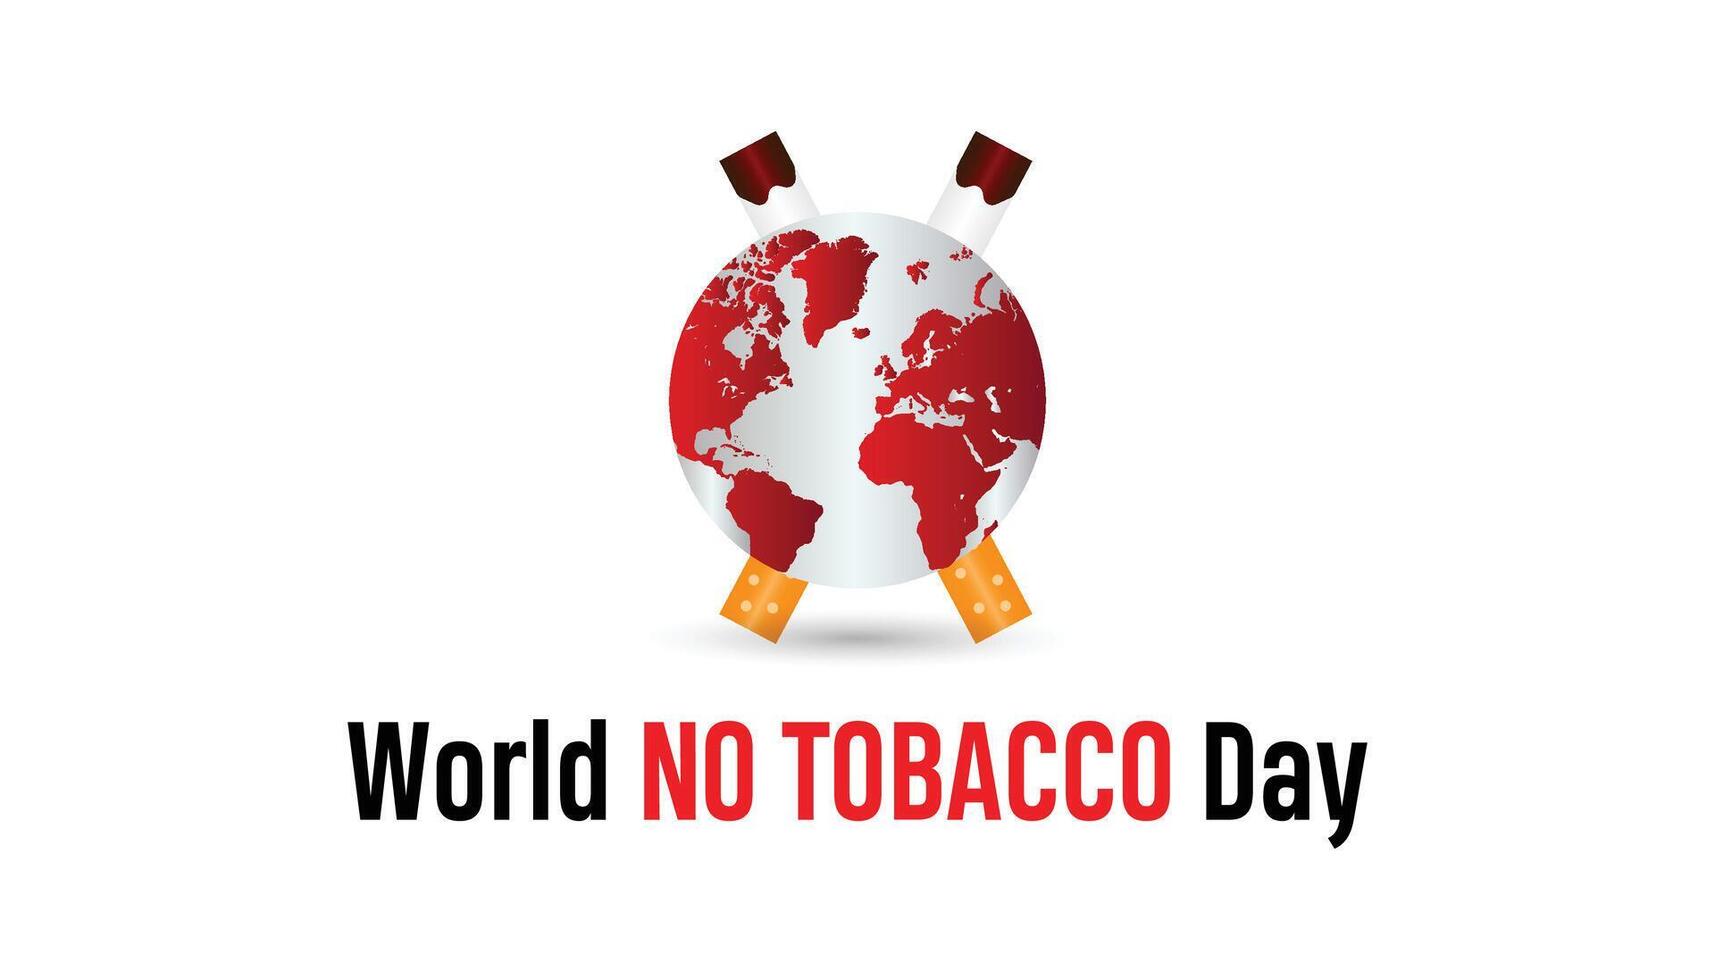 Welt Nein Tabak Tag beobachtete jeder Jahr im dürfen. Vorlage zum Hintergrund, Banner, Karte, Poster mit Text Inschrift. vektor